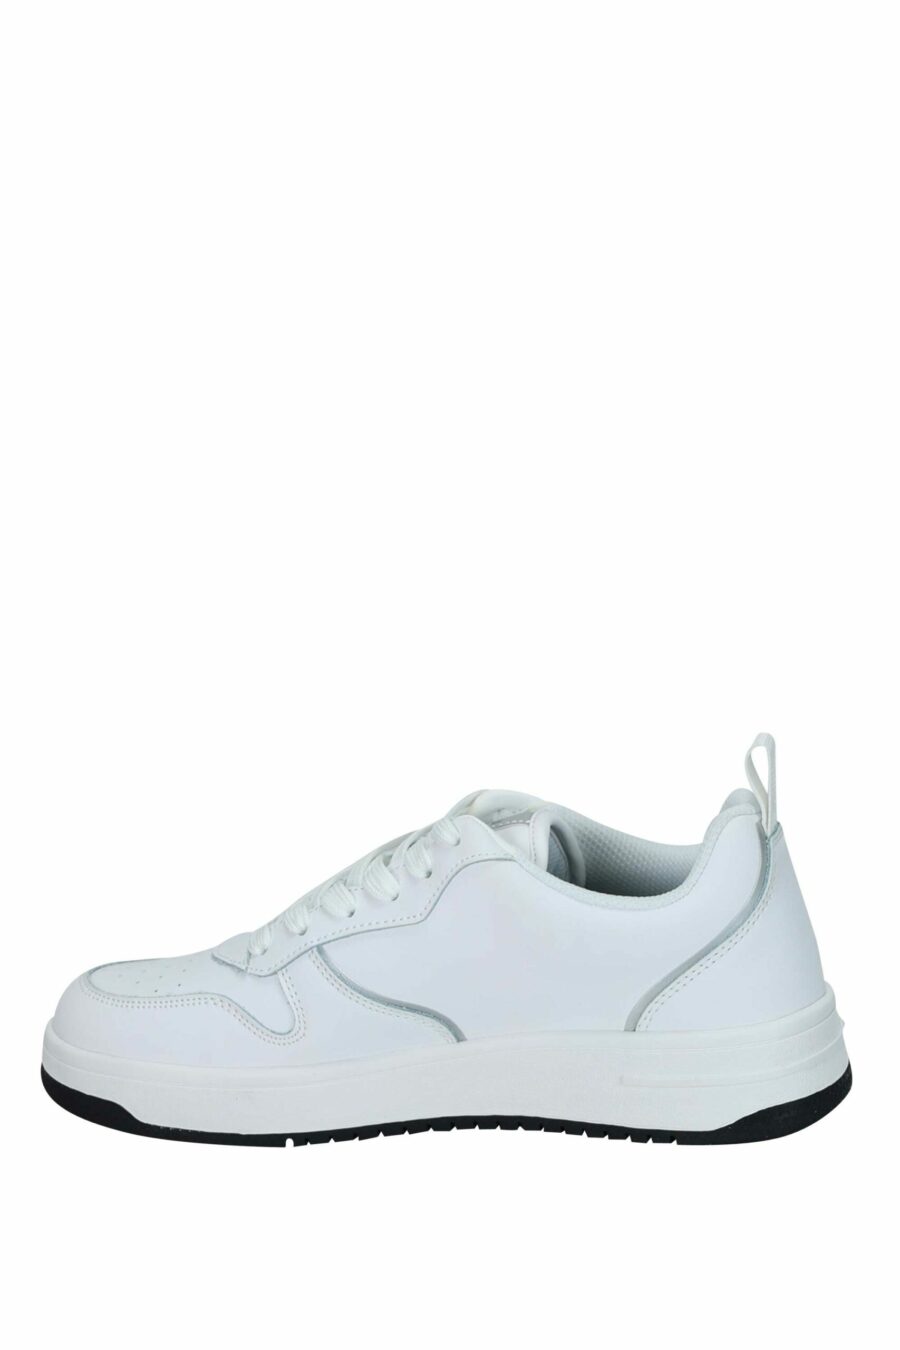 Zapatillas blancas con minilogo circular "c" monocromático - 8052672739735 2 scaled